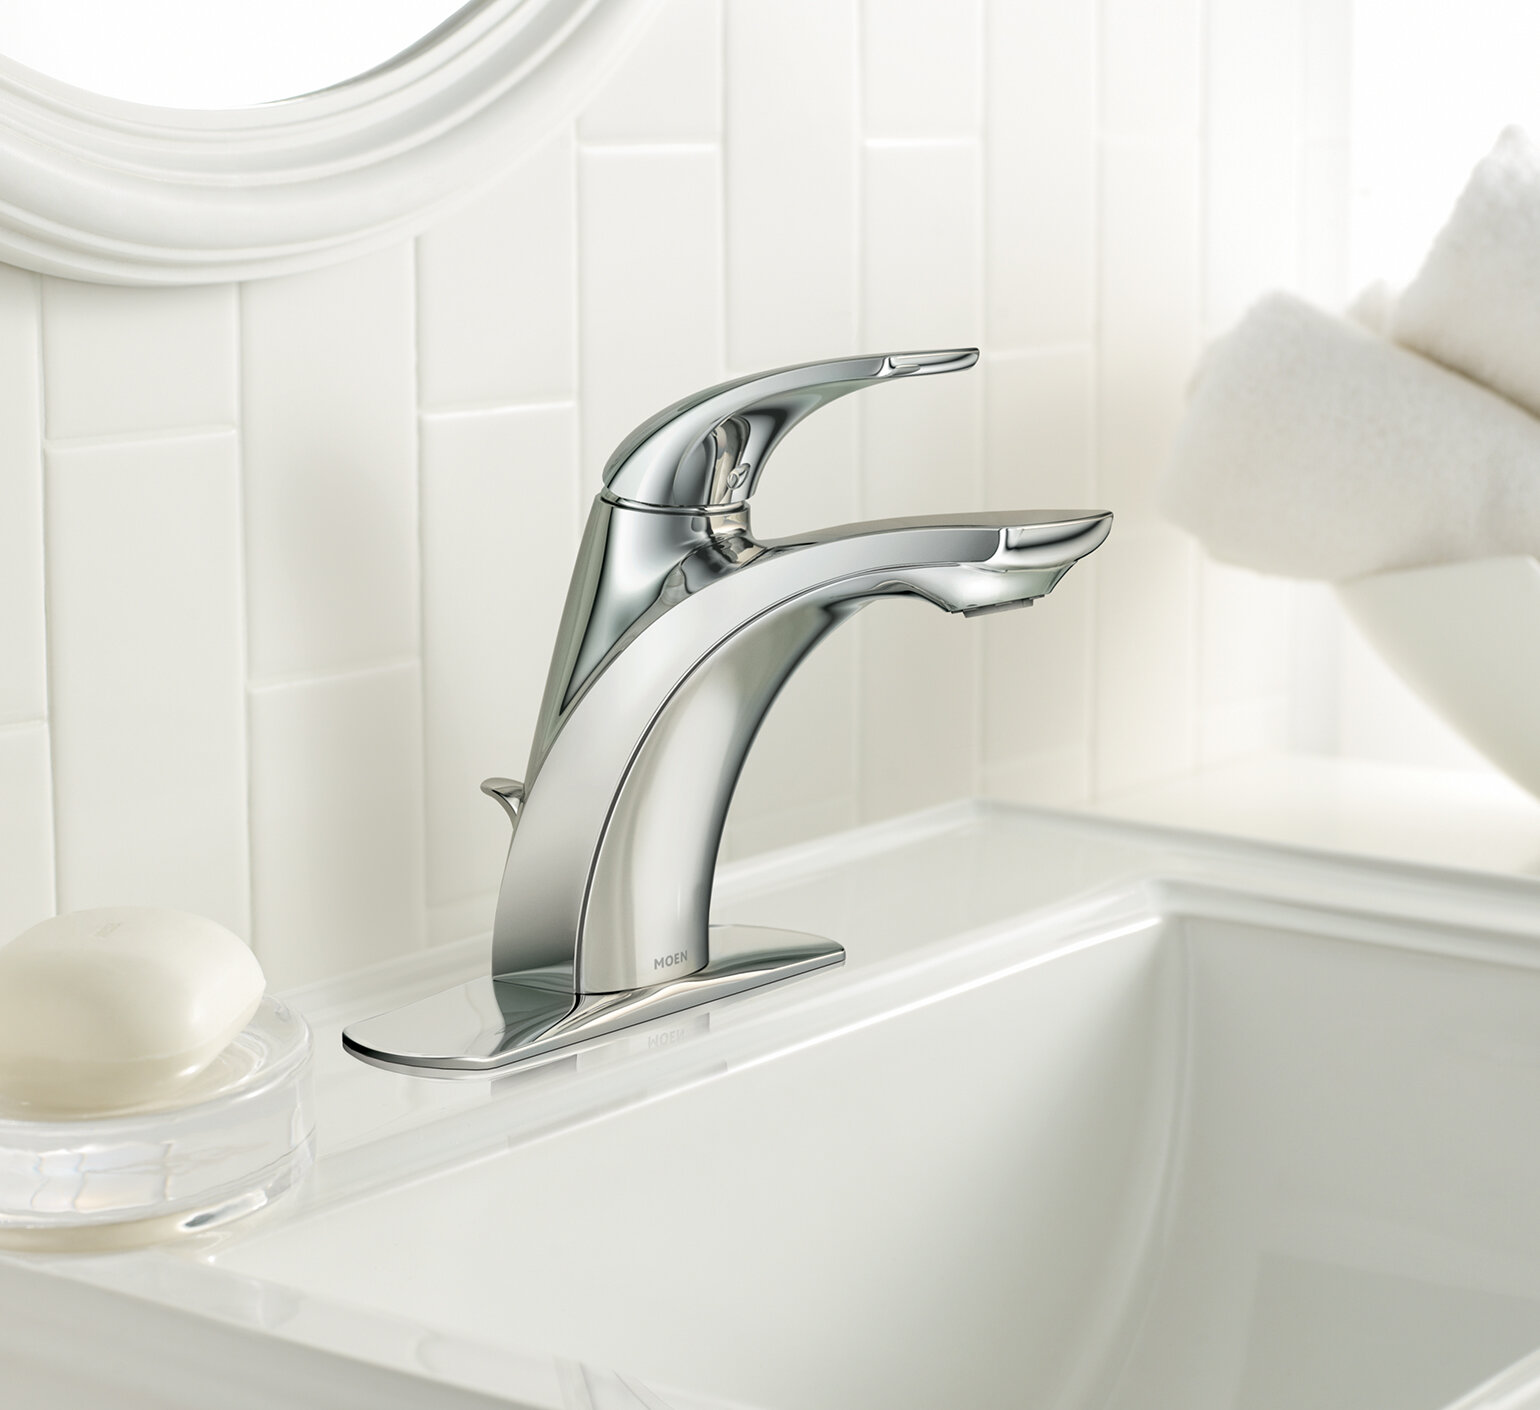 Wsl84533 Moen Zarina Bathroom Faucet Reviews Wayfair